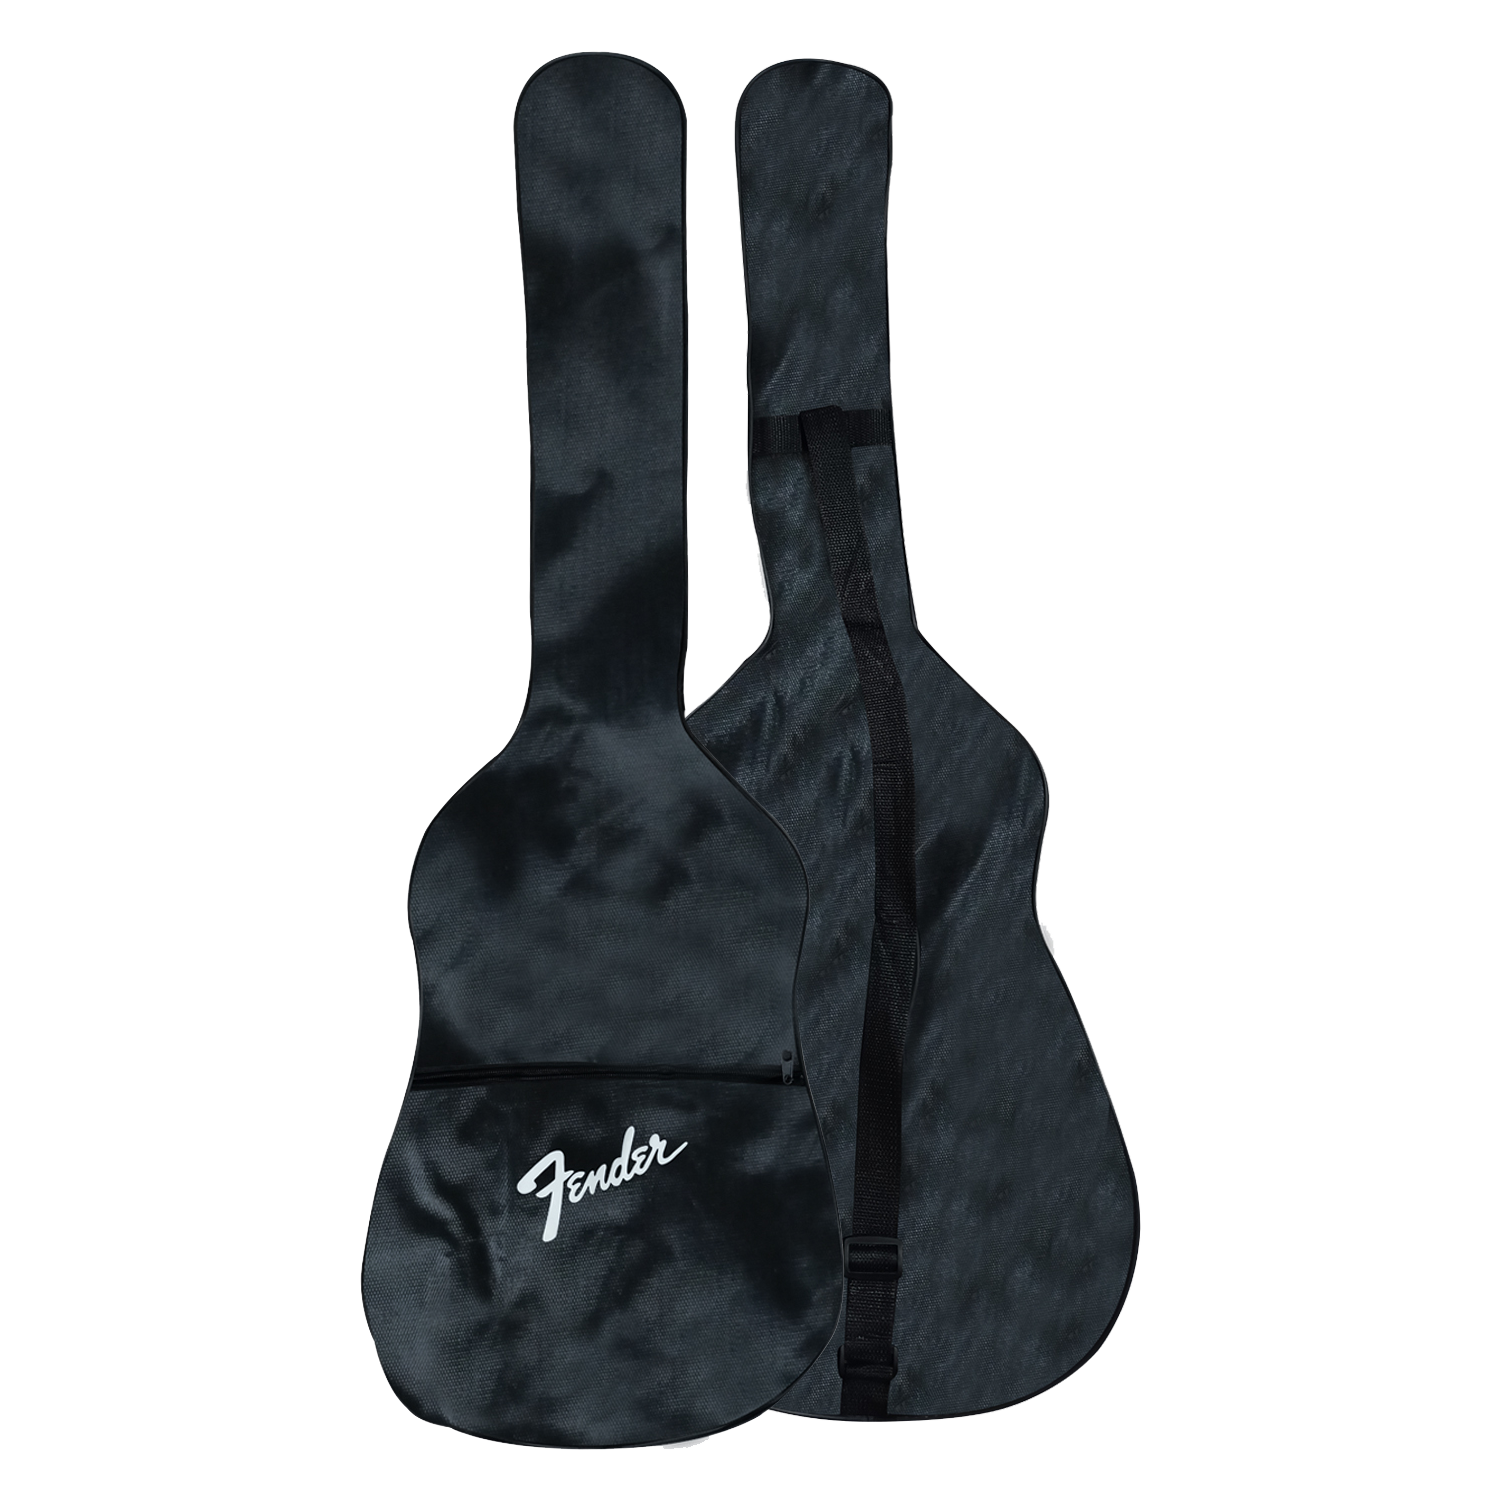 Fender Villager 12-String Electro-Acoustic Guitar - Aged Natural w/Bag